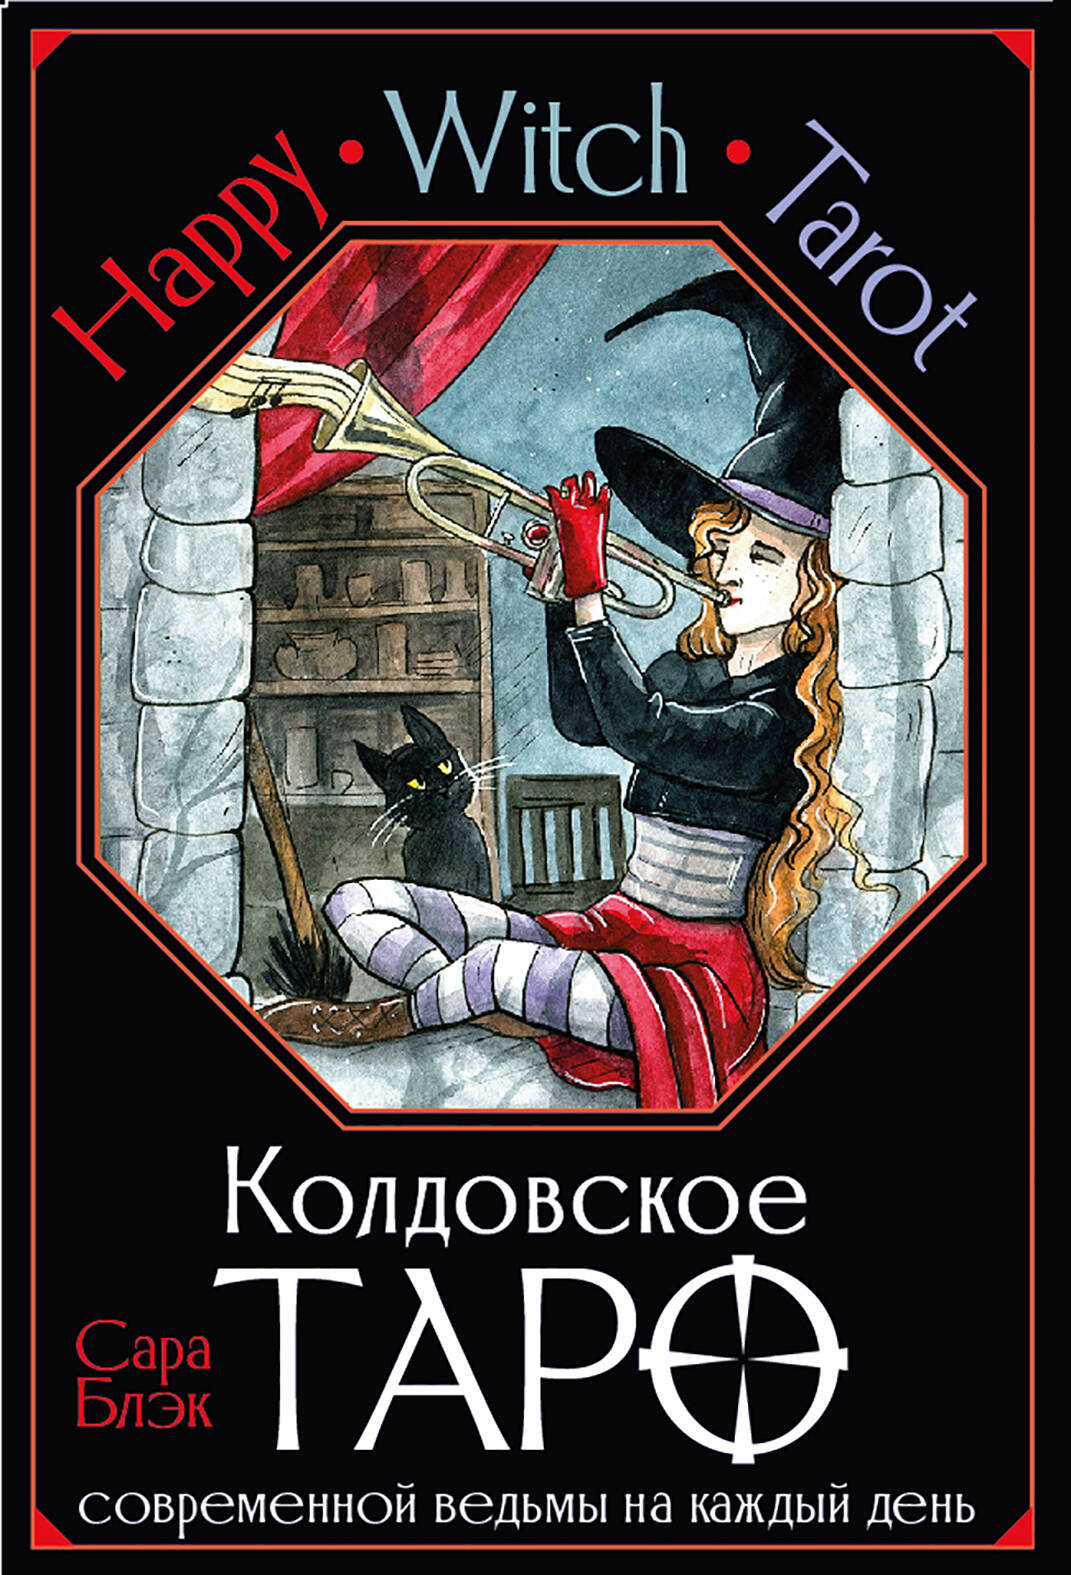 Блэк Сара Happy Witch Tarot. Колдовское Таро современной ведьмы на каждый день (78 карт+инструкция)